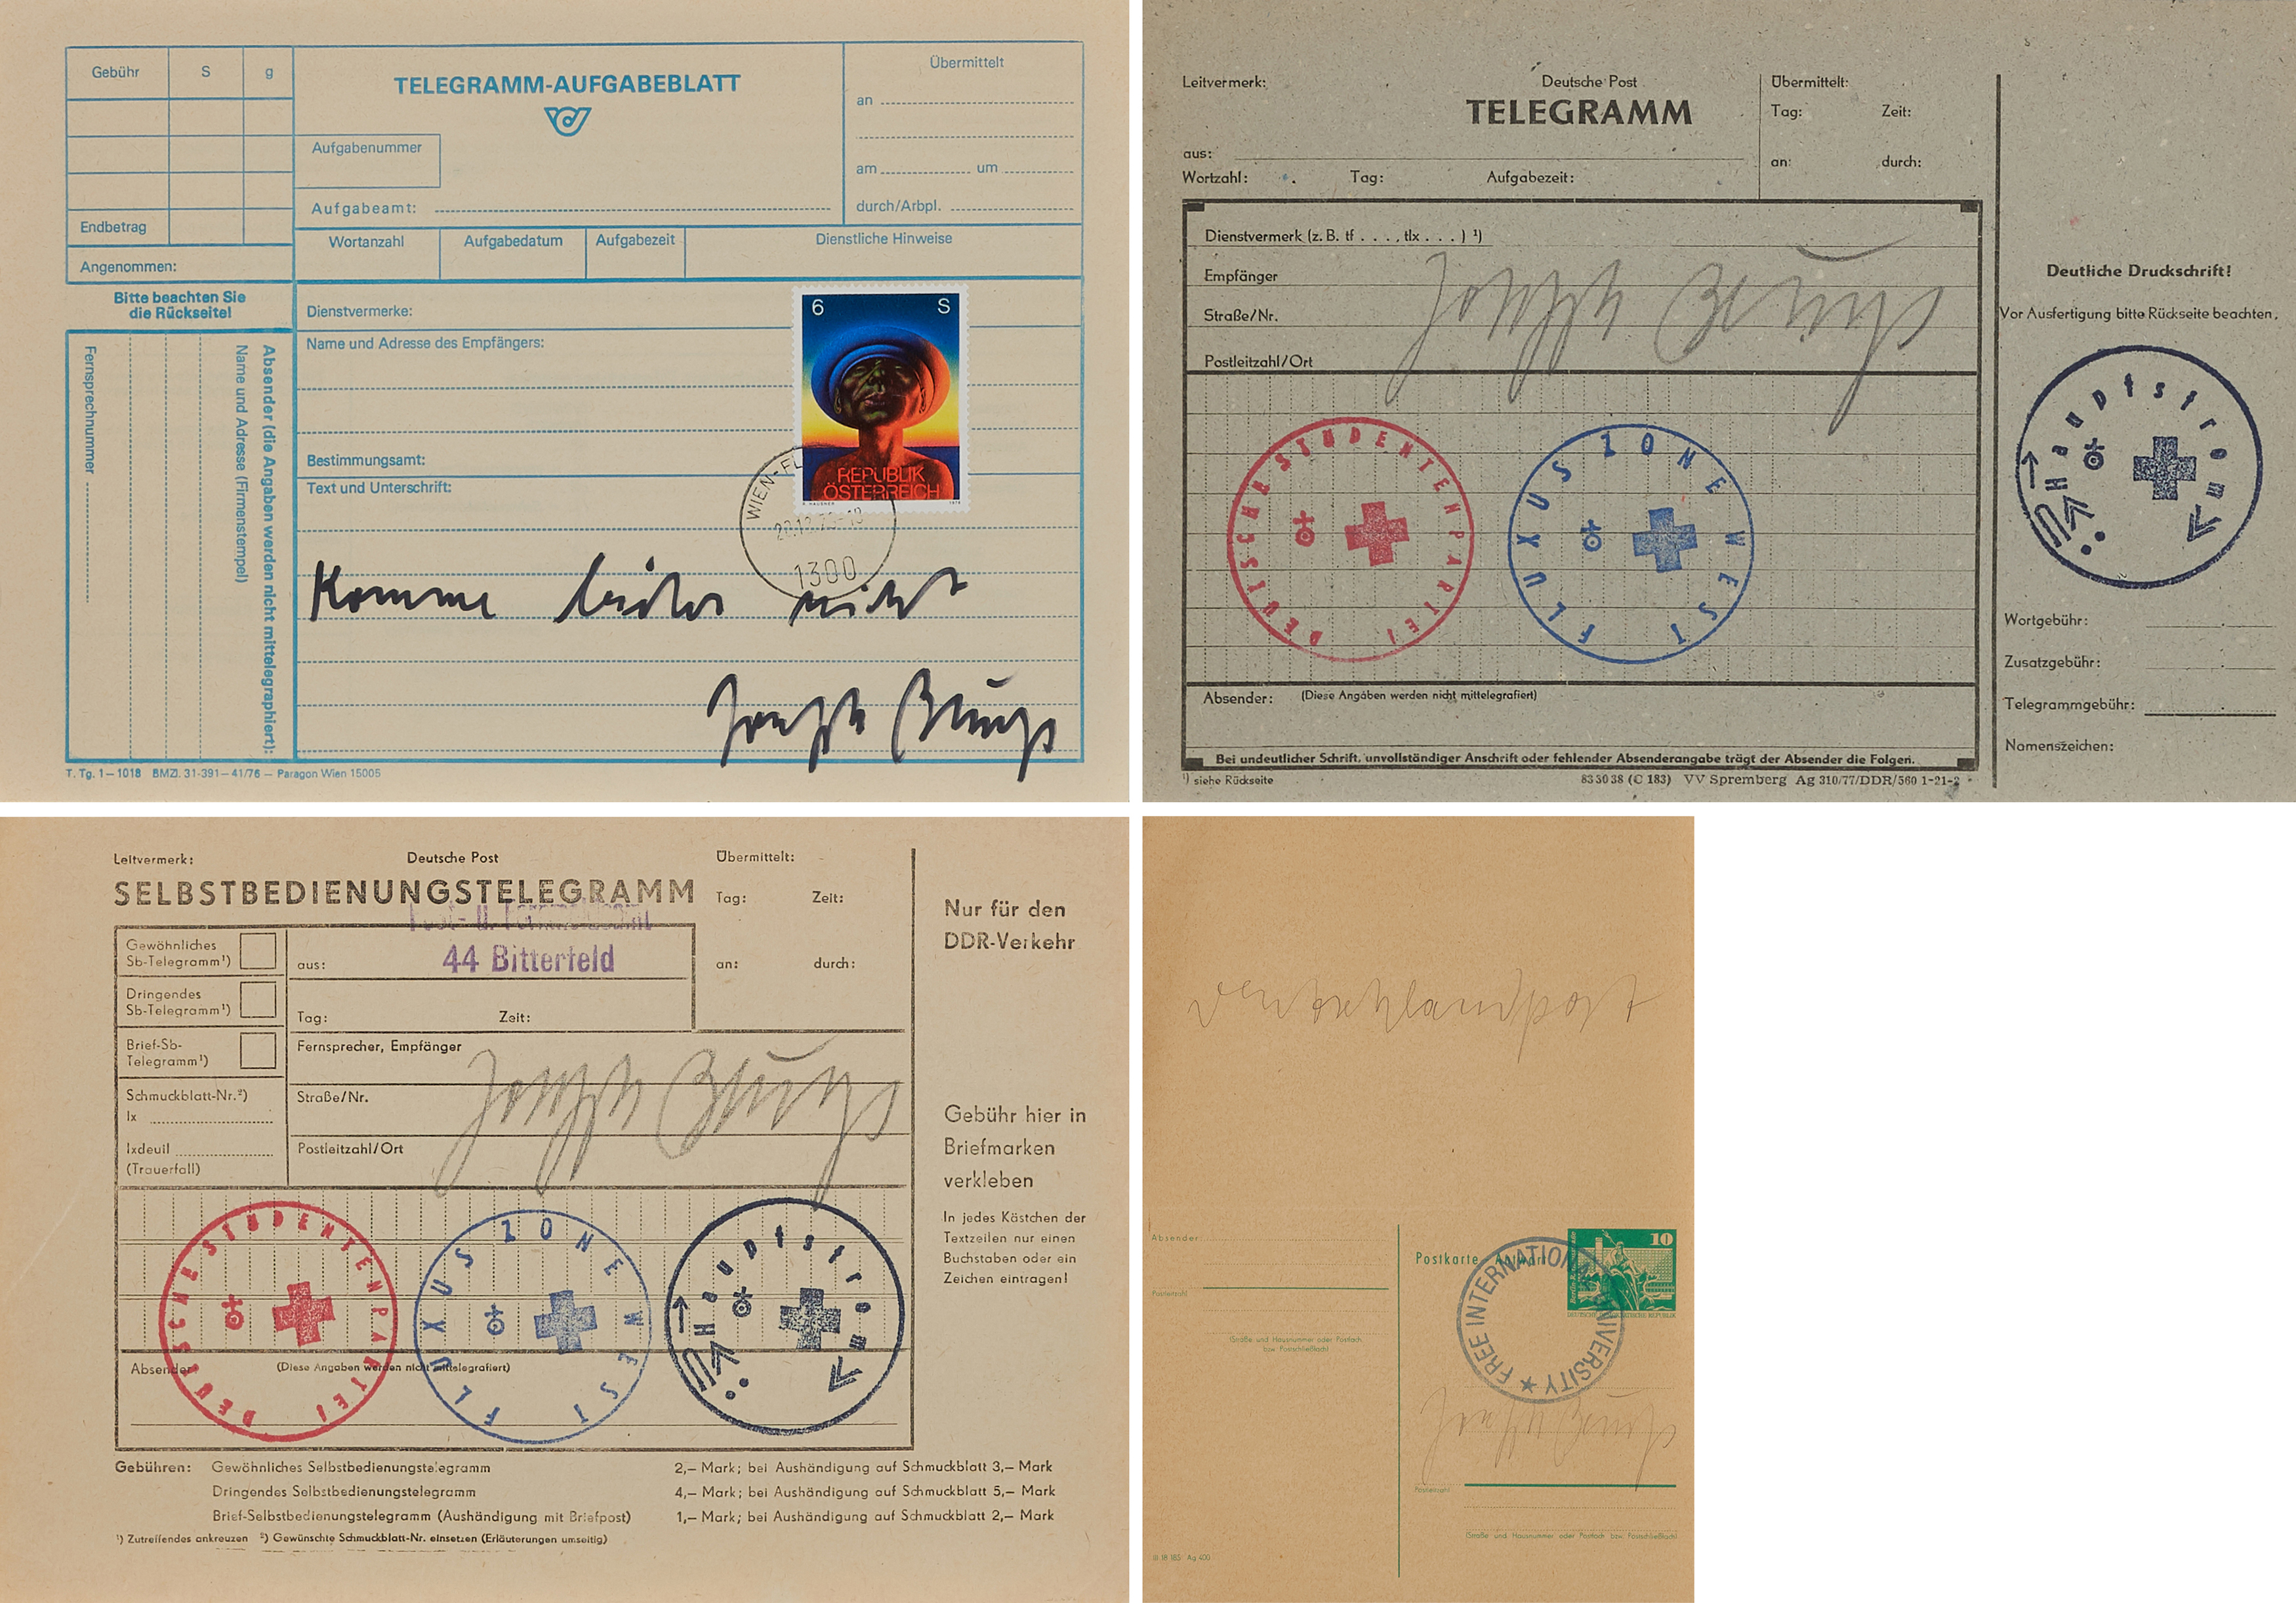 Joseph Beuys - Konvolut von 4 Multiples, 65546-345, Van Ham Kunstauktionen